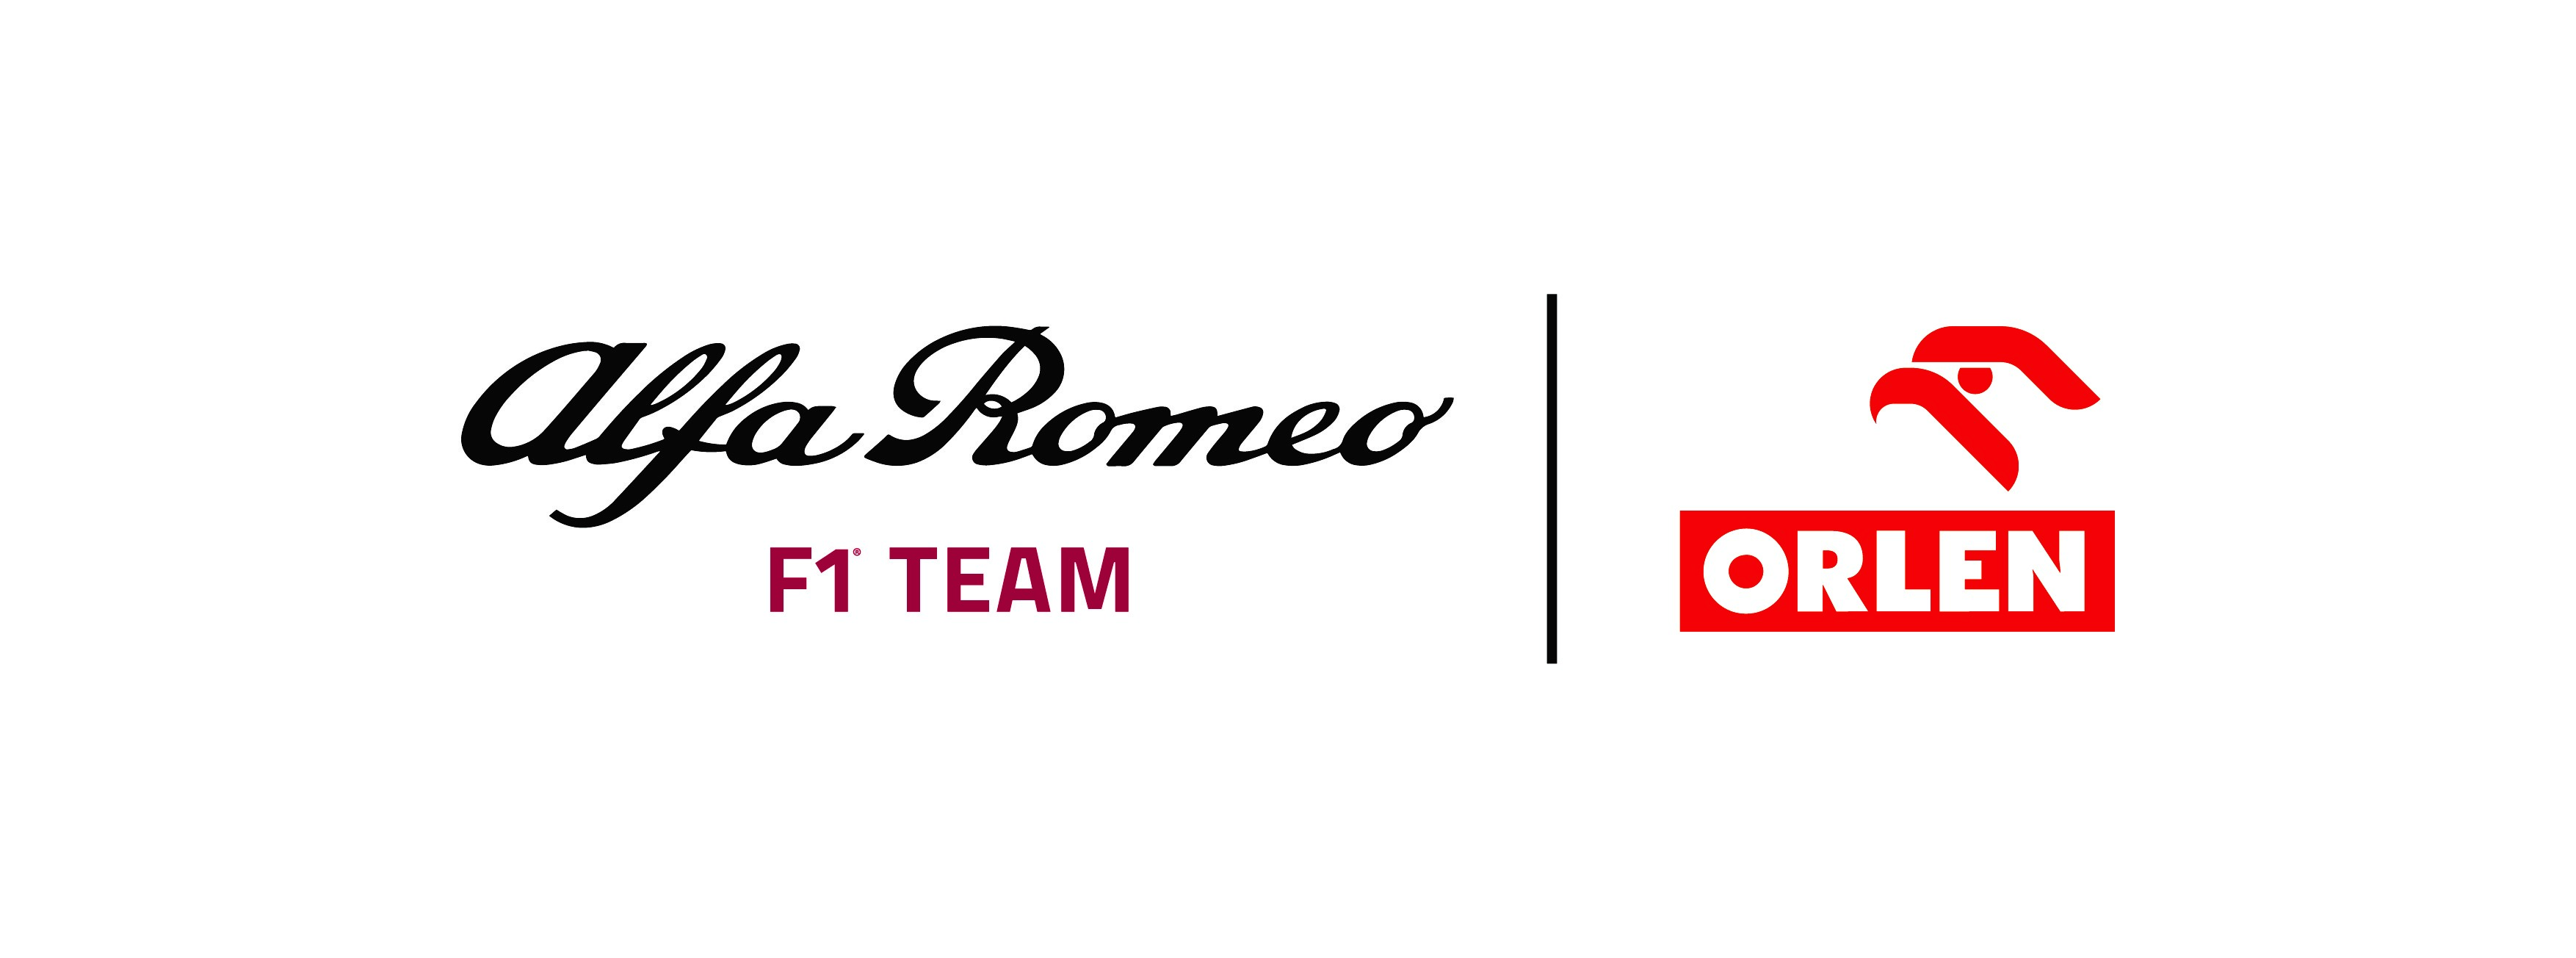 ألفا روميو تعلن عن تعديل اسم وشعار فريقها ليصبح فريق ألفا روميو فورمولا 1 اورلاين